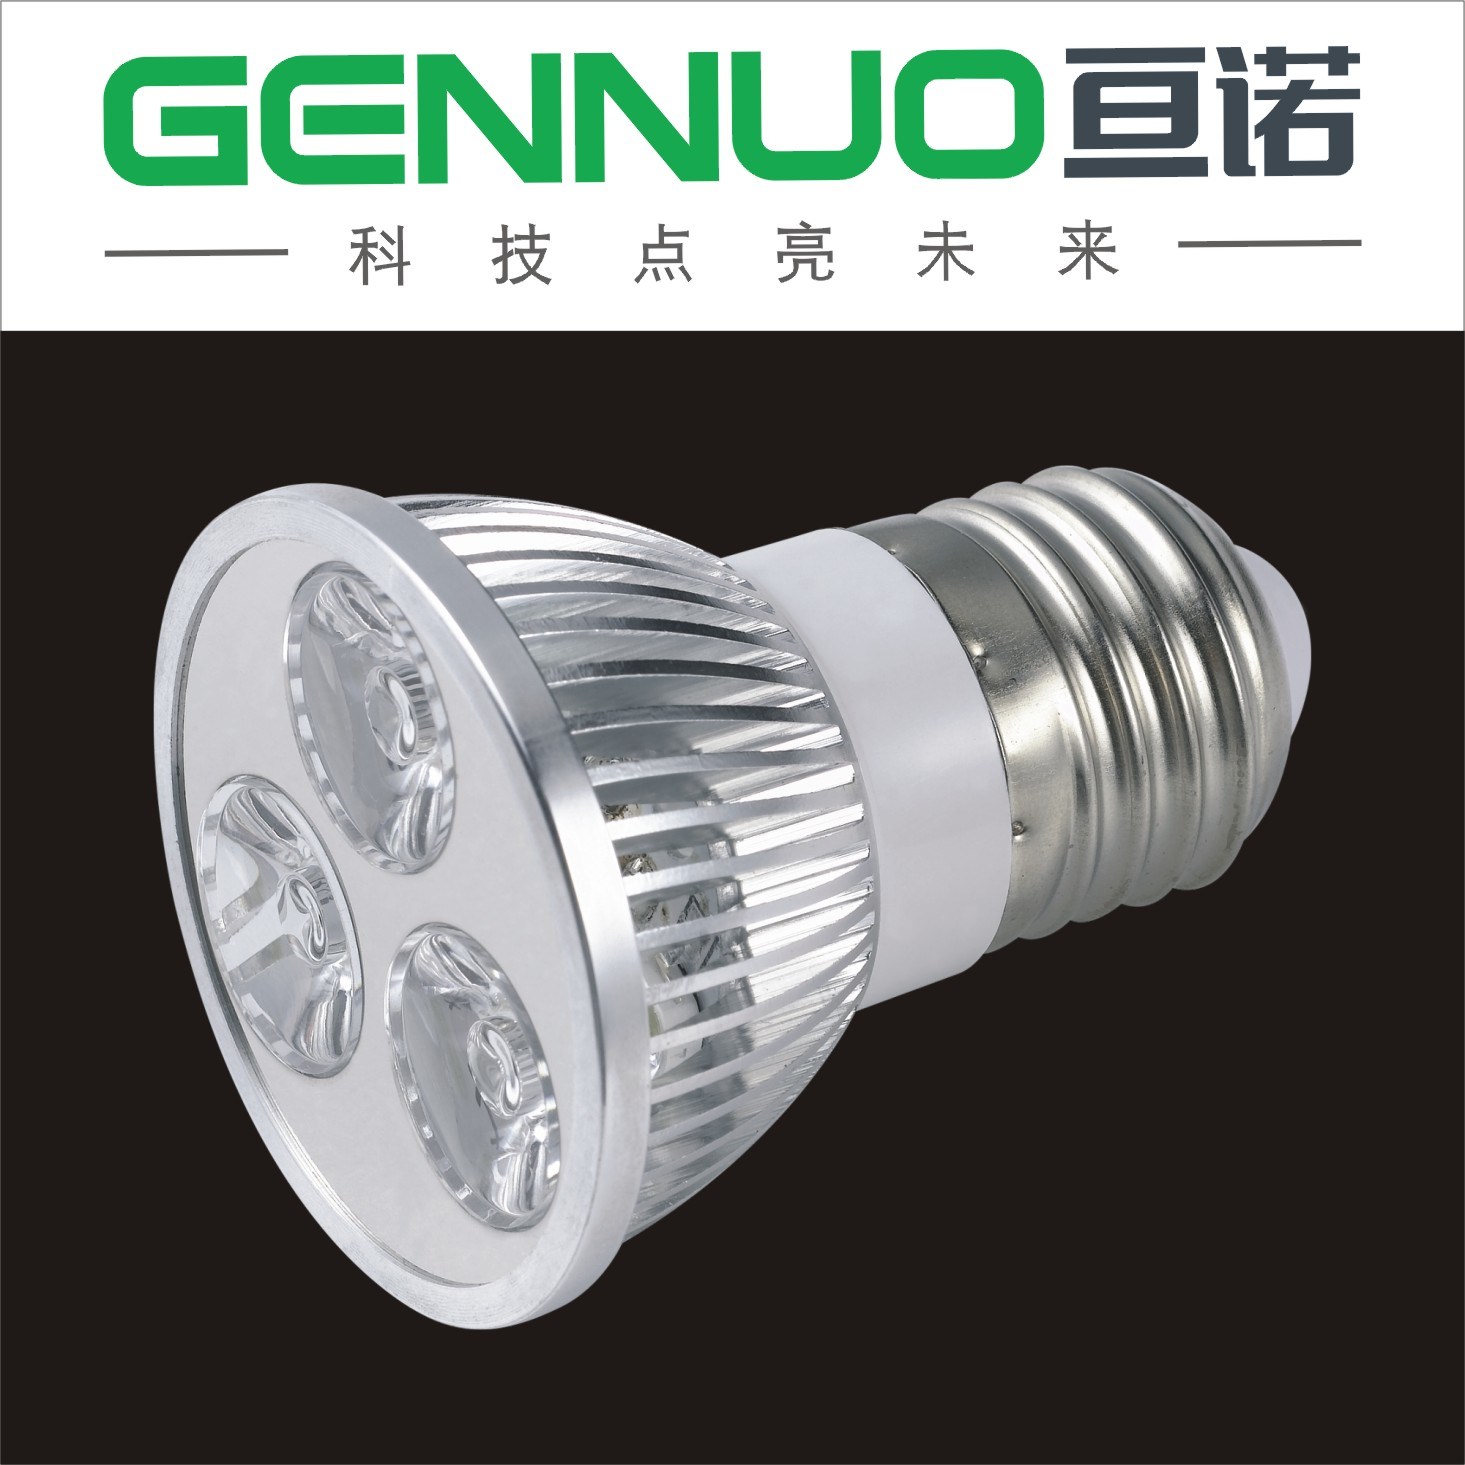 LED Spotlight (GN-SDB-1121)